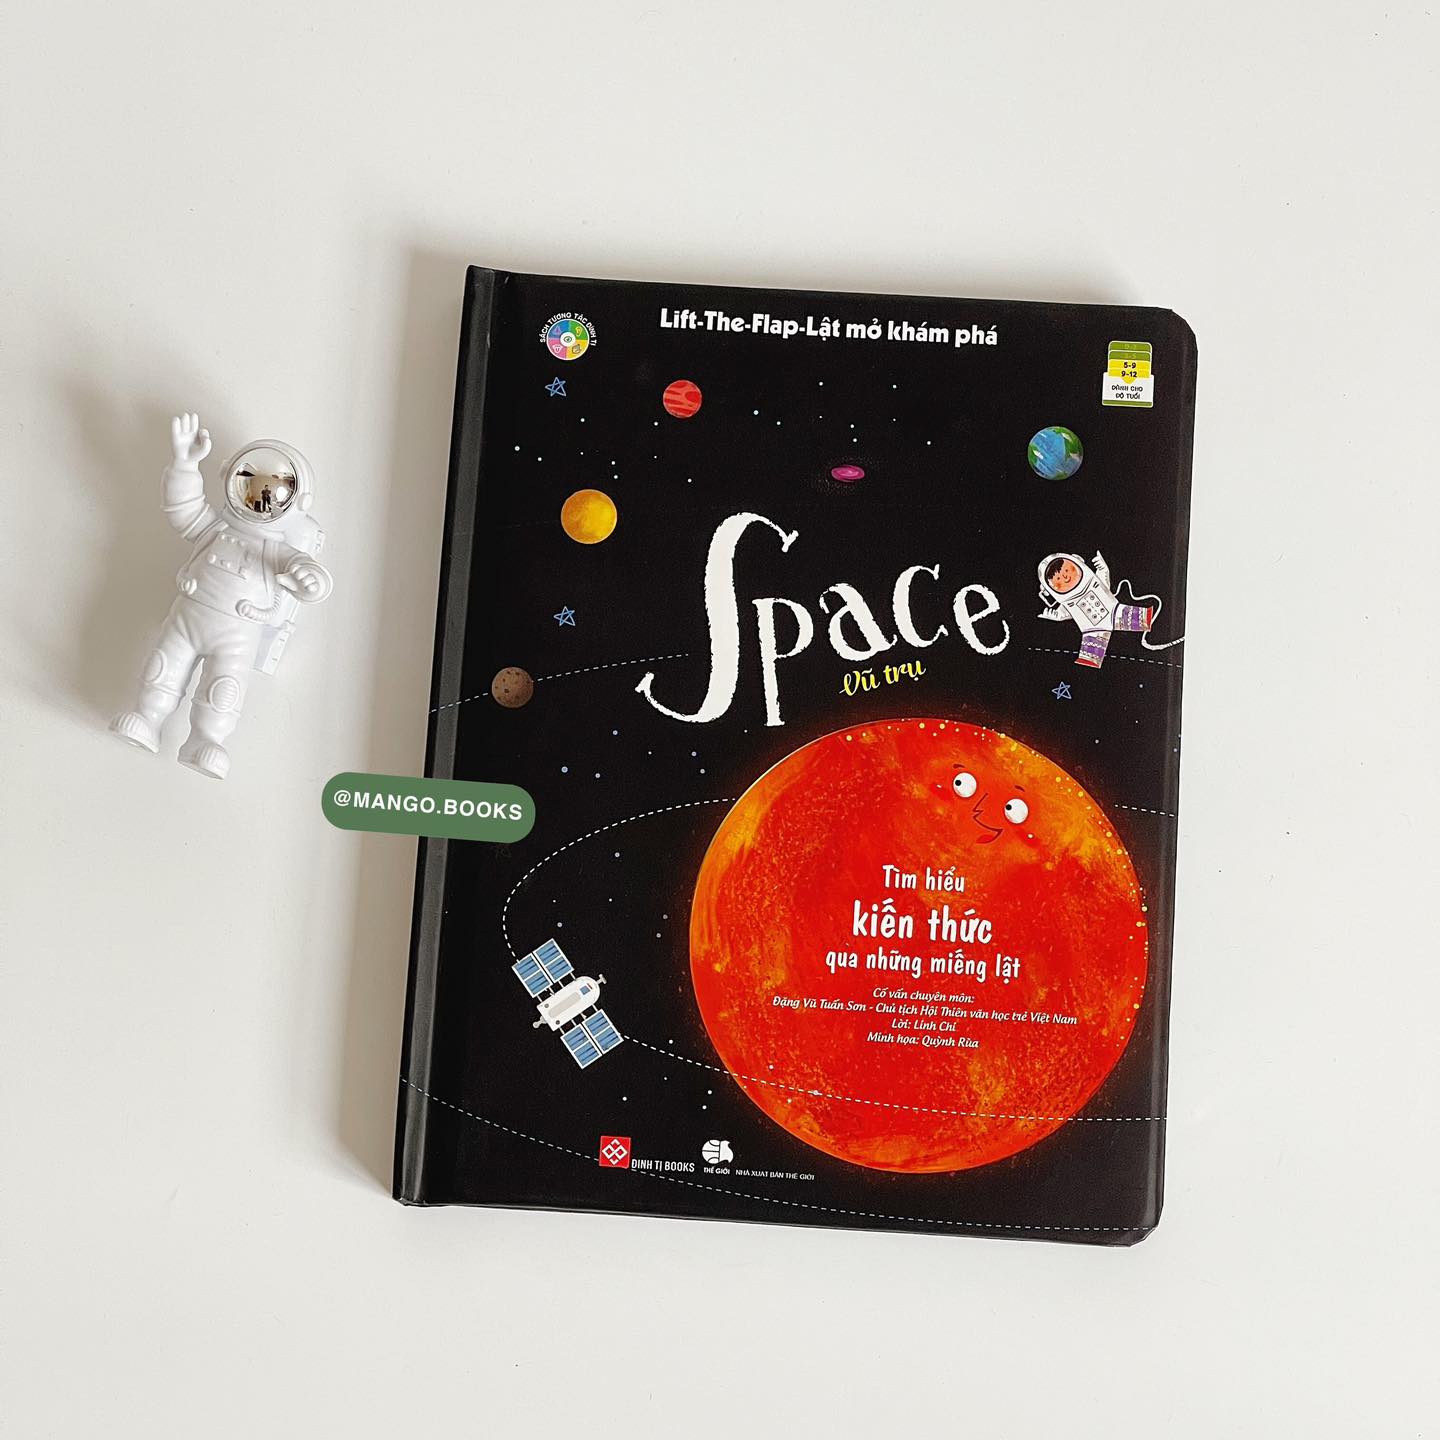 Cuốn sách Lật mở khám phá Space - Vũ trụ